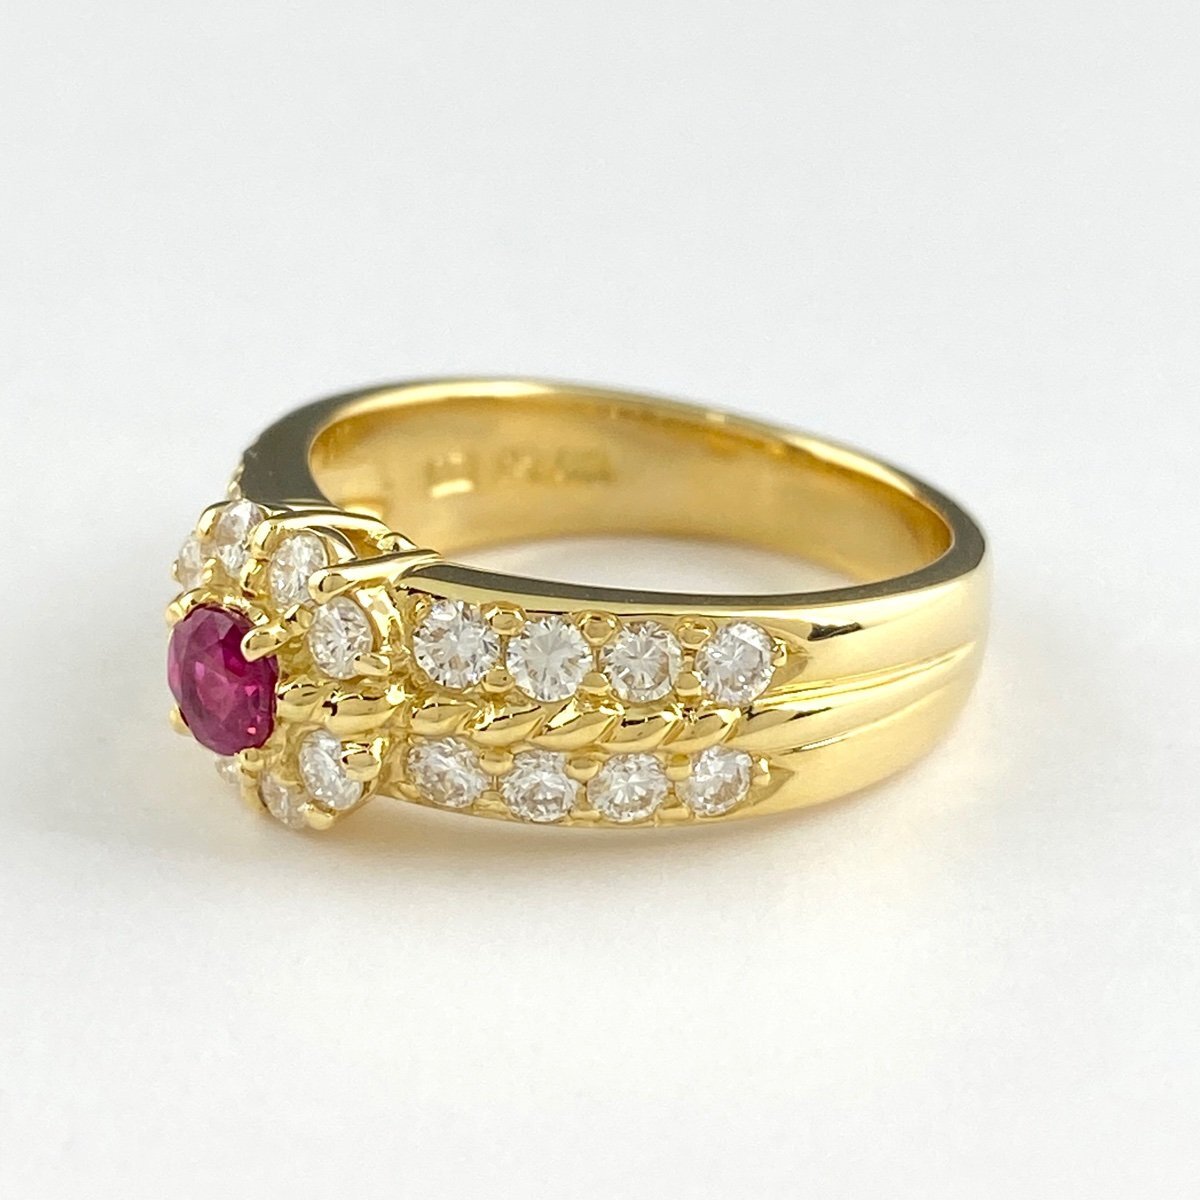  NINA RICCI   рубин    дизайн  кольцо   YG  жёлтый  золотой   кольцо   ... бриллиантовый   кольцо   12 номер   K18  рубин    алмаз   женский  【 подержанный товар 】